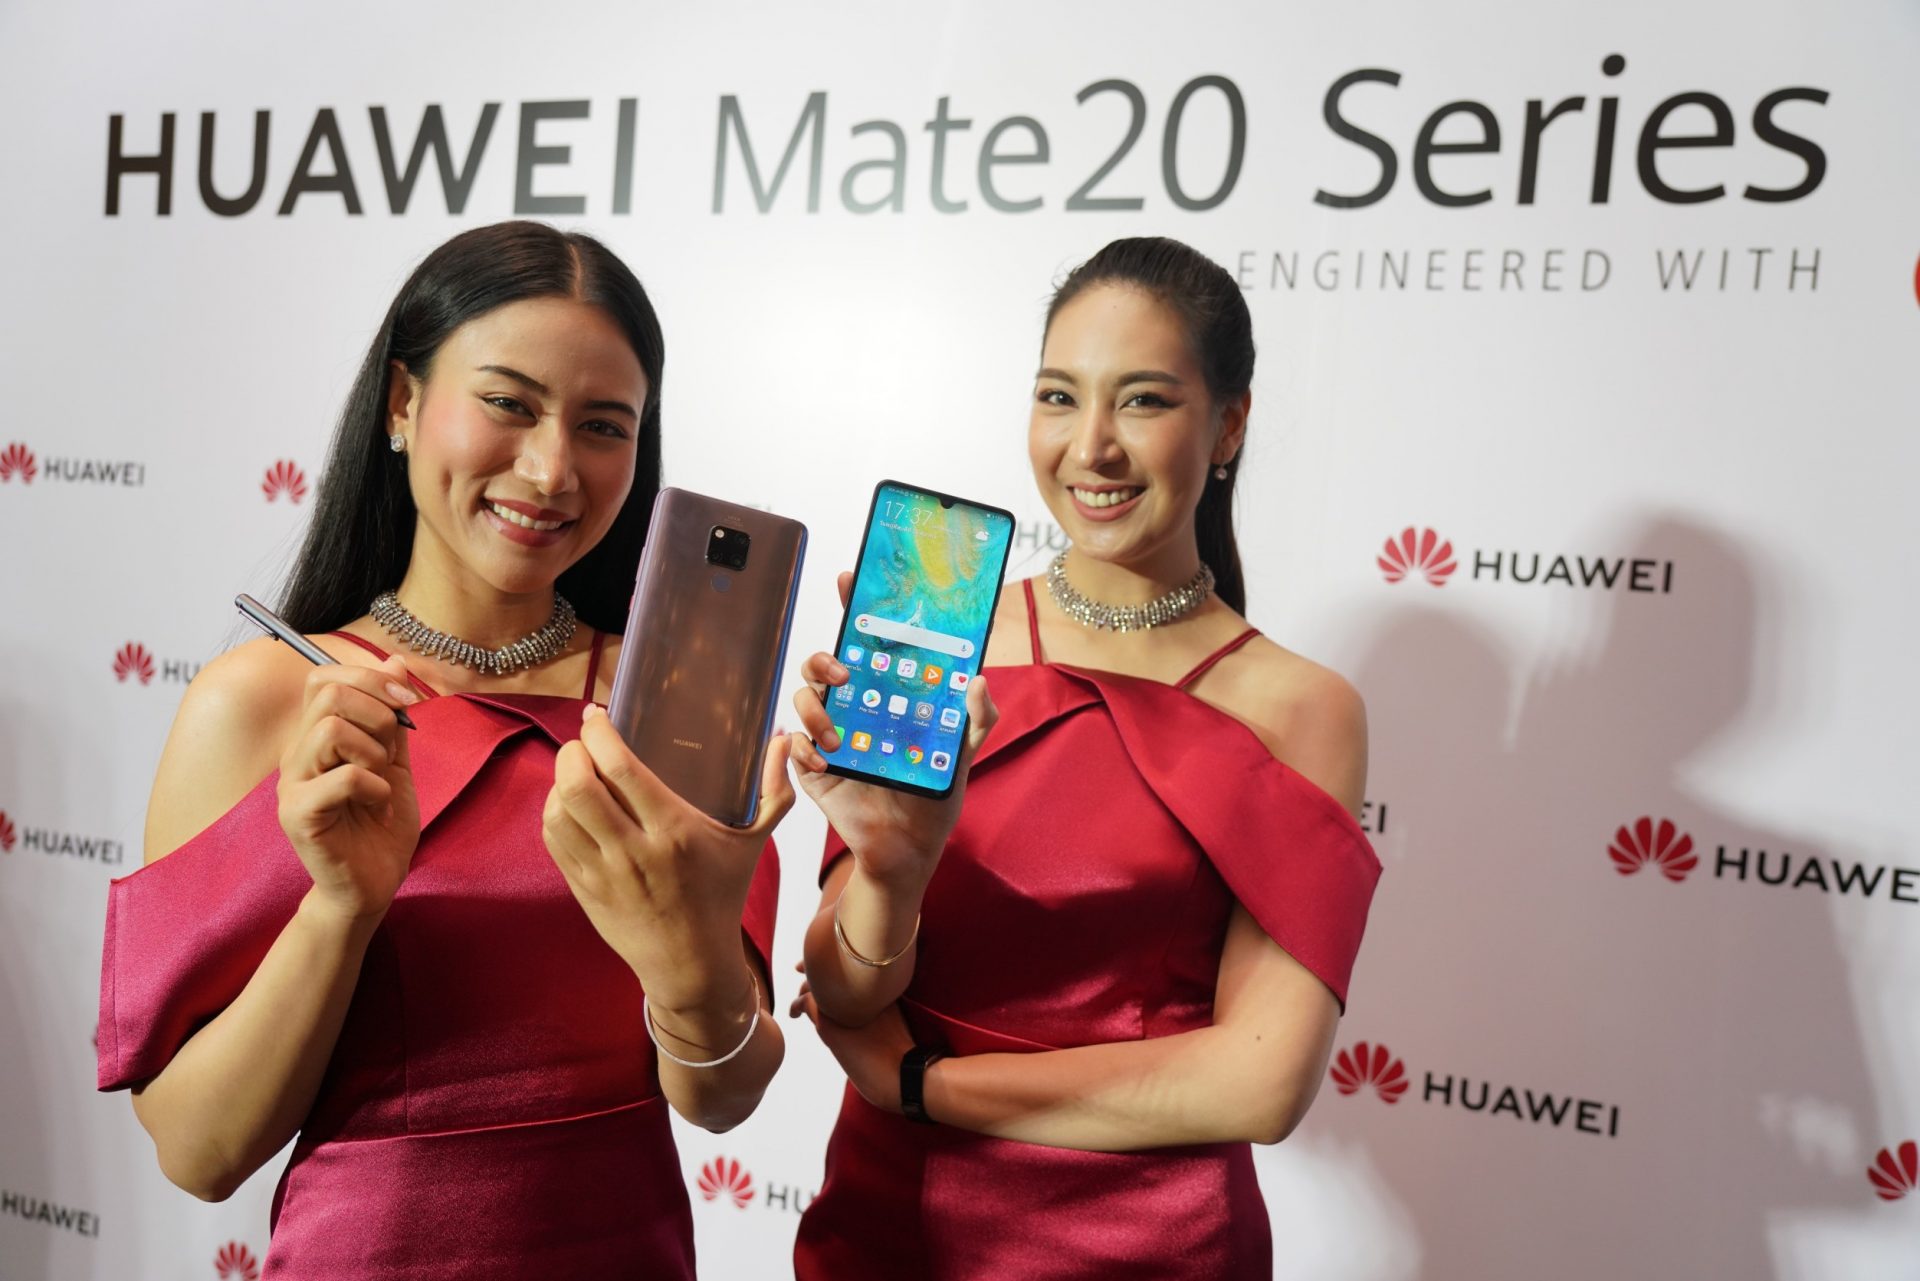 เปิดราคา Huawei Mate 20 Series ในไทย เริ่มที่ 24,990 บาท ขายจริง 9 พ.ย. ซื้อผ่านค่ายมือถือ ส่วนลดเป็นหมื่น!